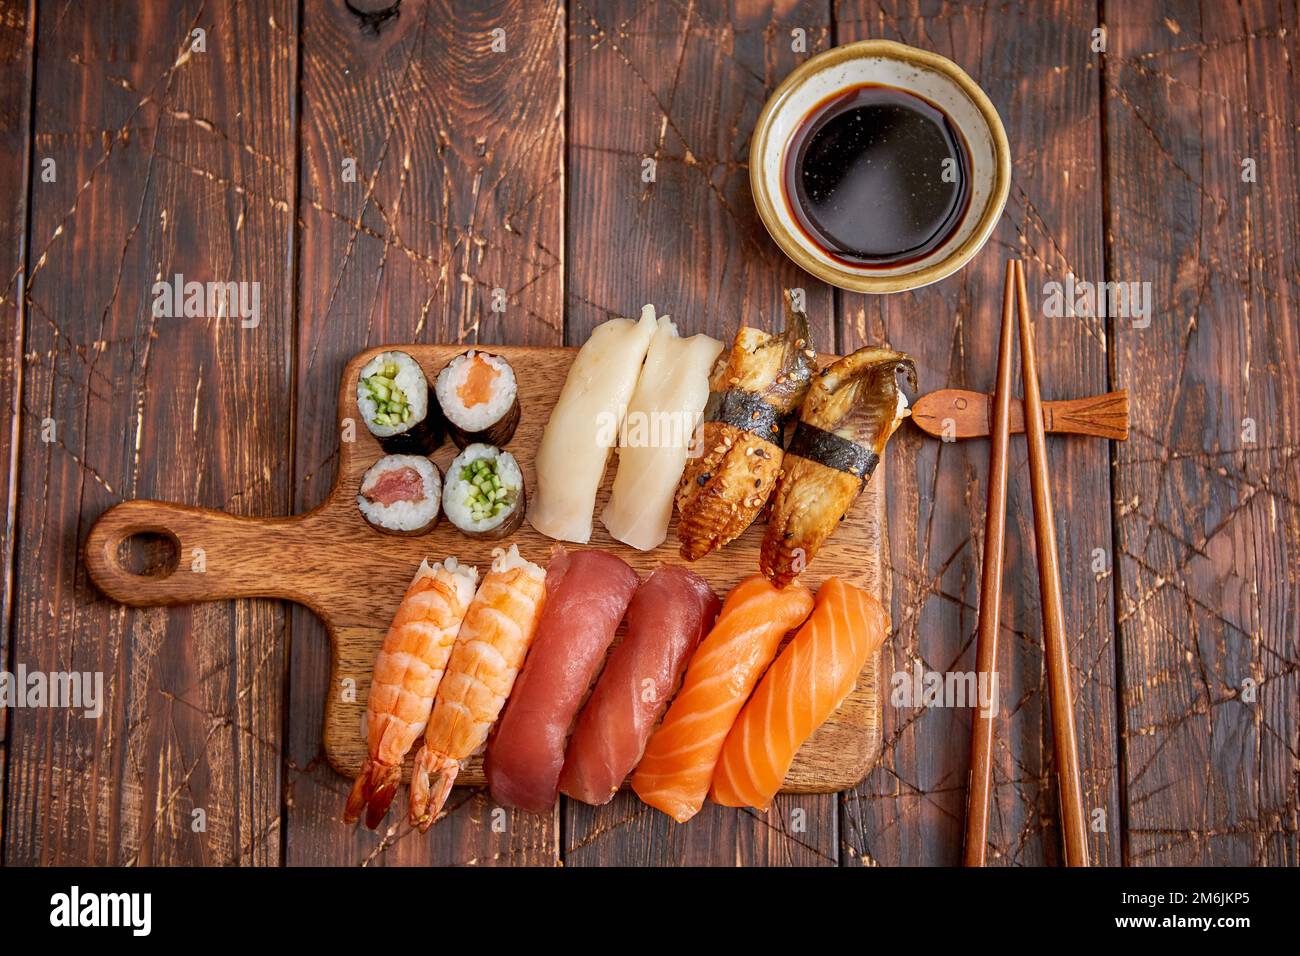 https://c8.alamy.com/comp/2M6JKP5/sushi-set-different-kinds-of-sushi-rolls-on-wooden-serving-board-2M6JKP5.jpg